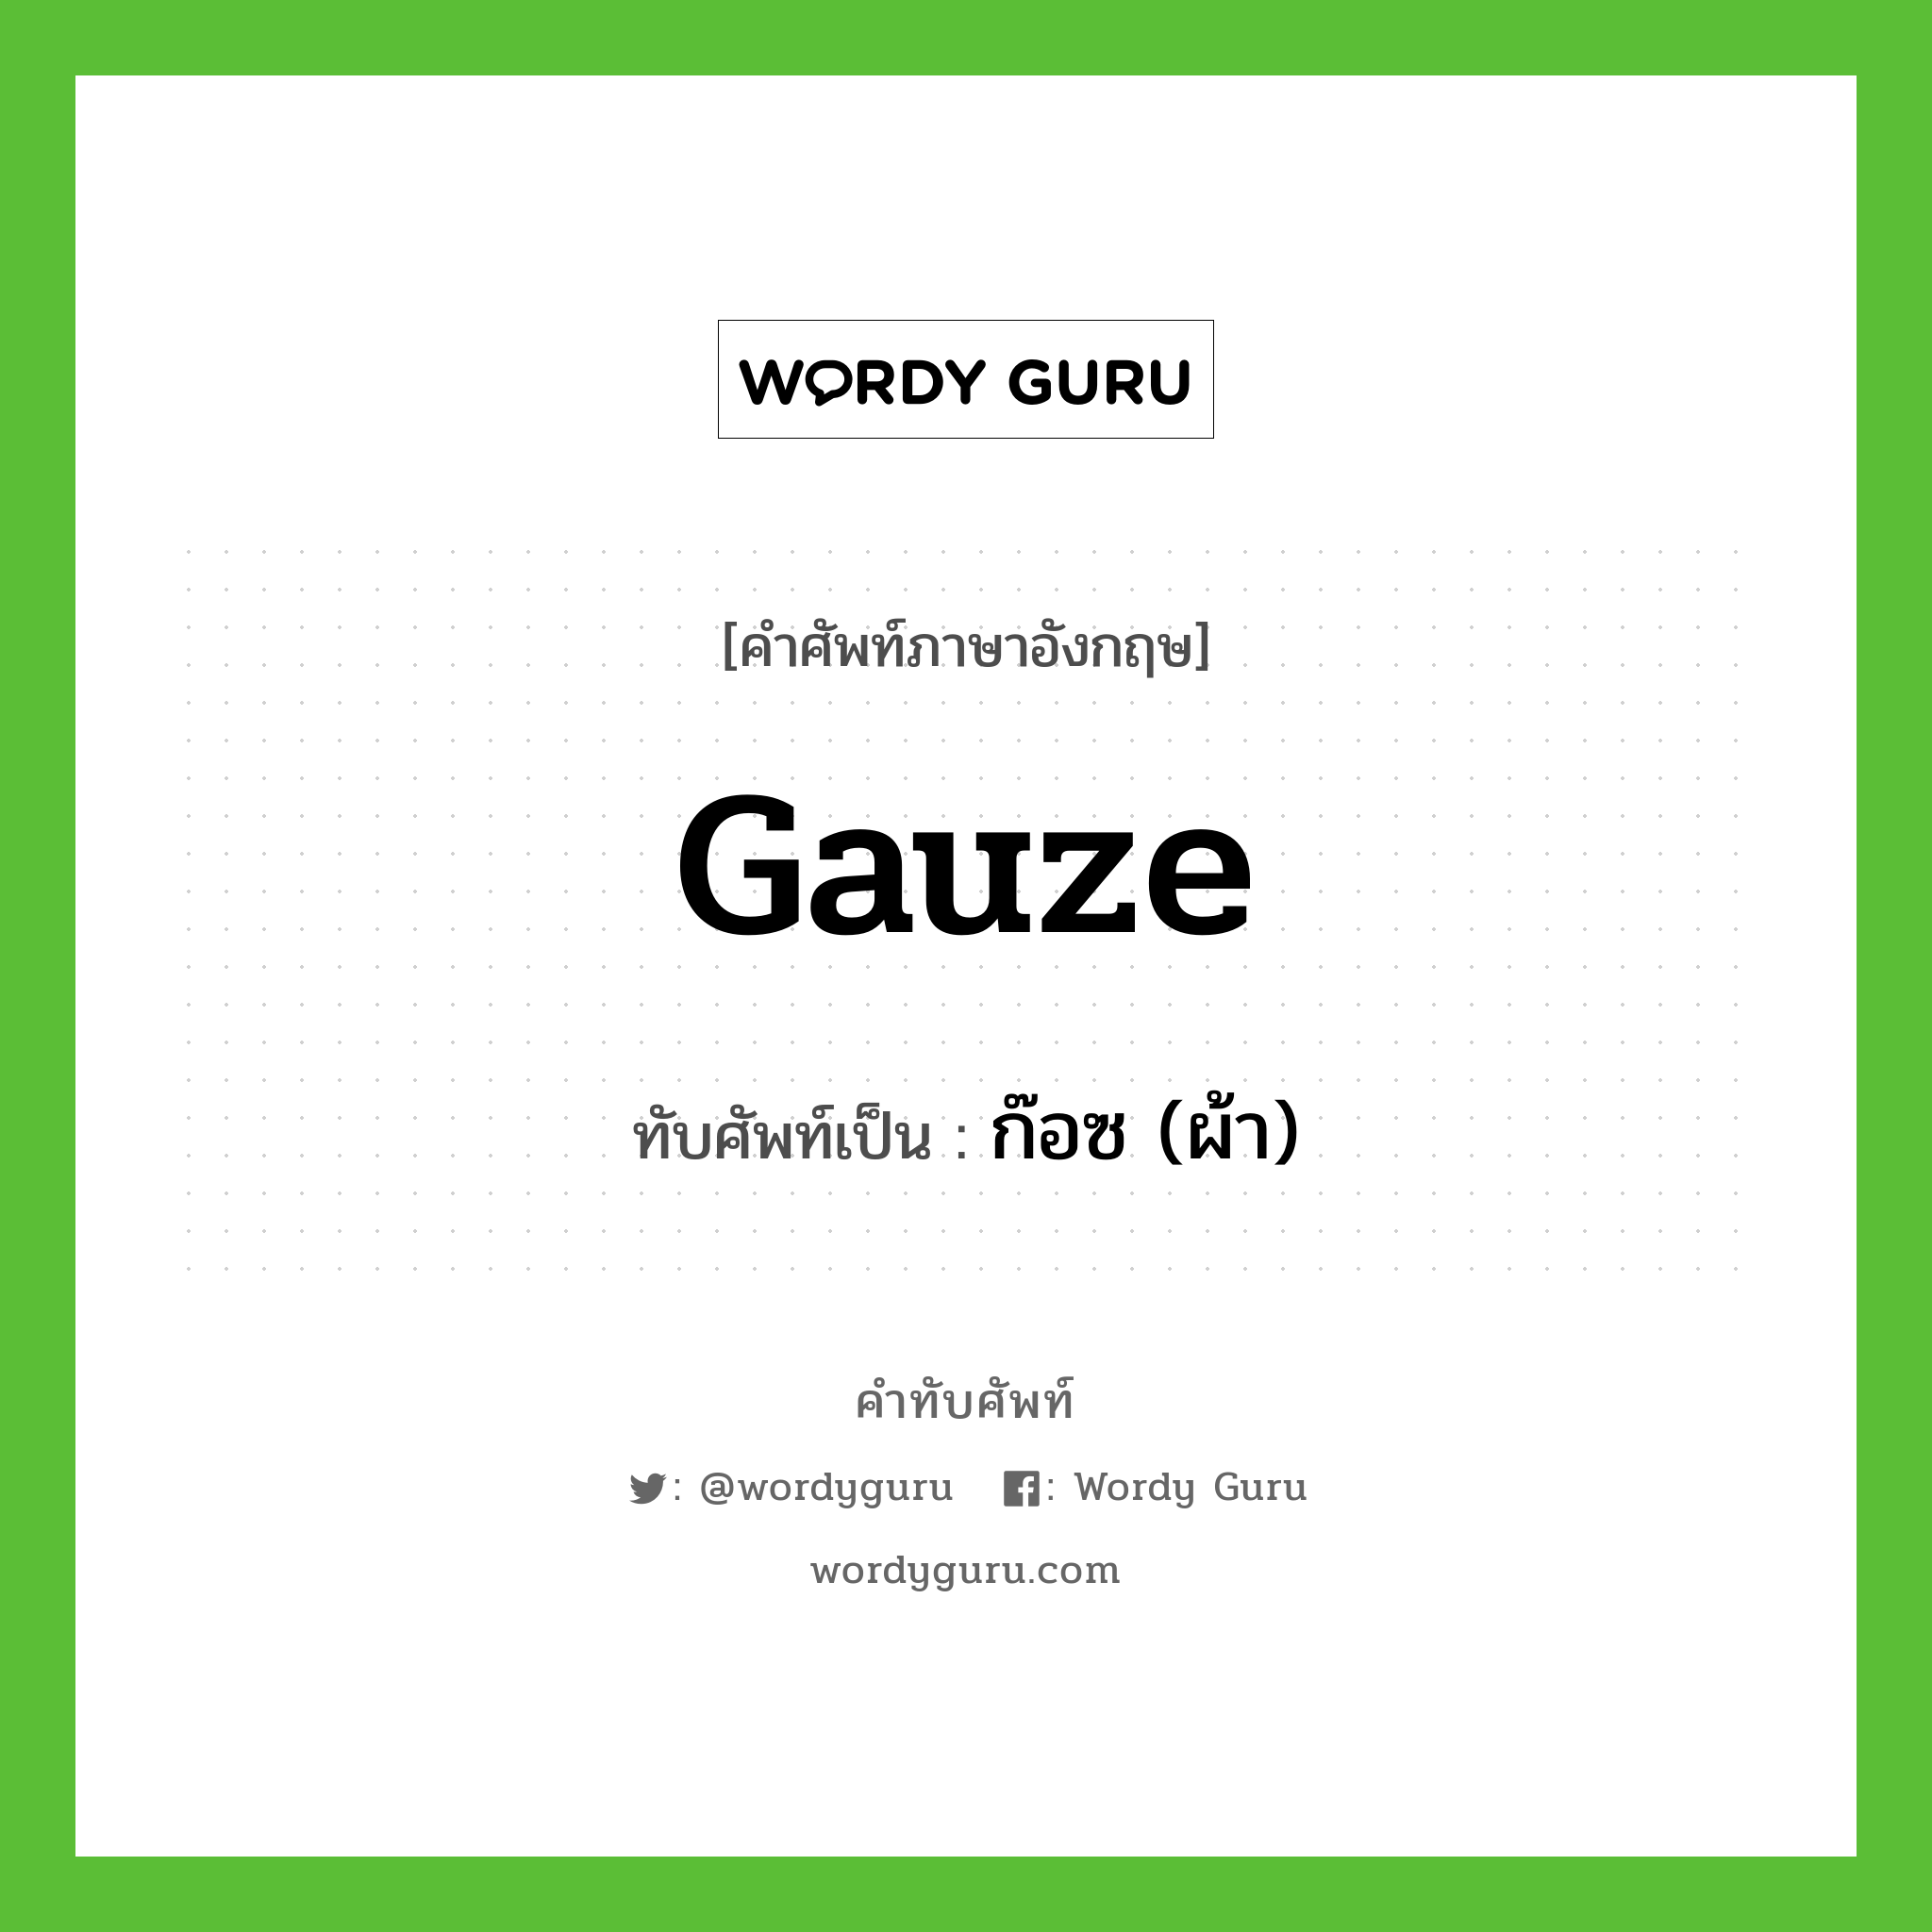 gauze เขียนเป็นคำไทยว่าอะไร?, คำศัพท์ภาษาอังกฤษ gauze ทับศัพท์เป็น ก๊อซ (ผ้า)